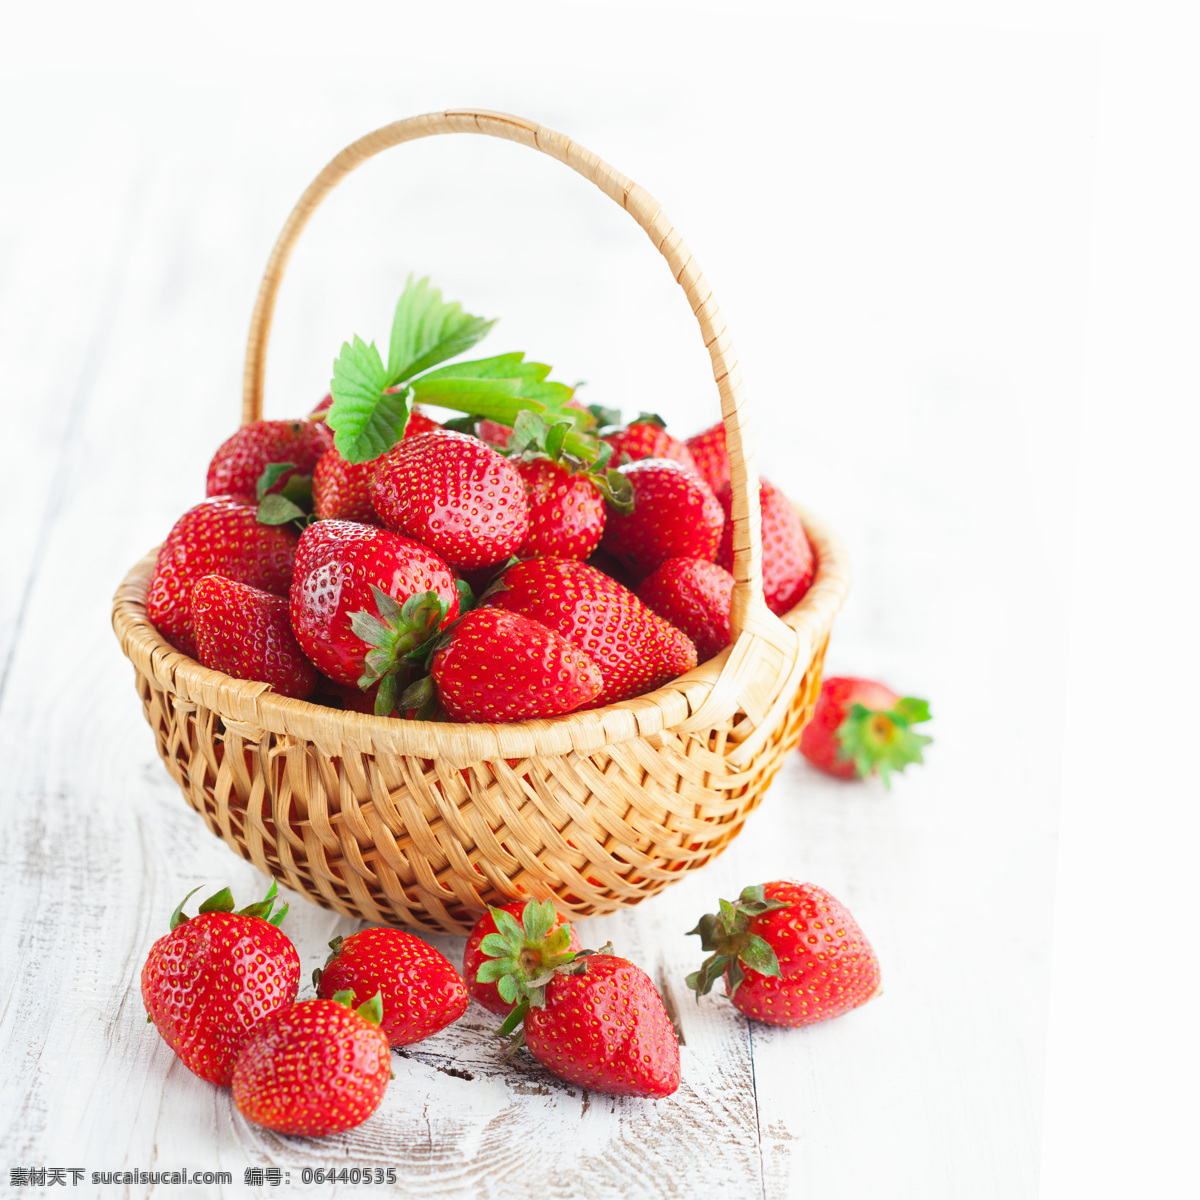 手提 篮里 新鲜 草莓 手提篮 新鲜草莓 新鲜水果 水果摄影 果实 水果蔬菜 餐饮美食 白色